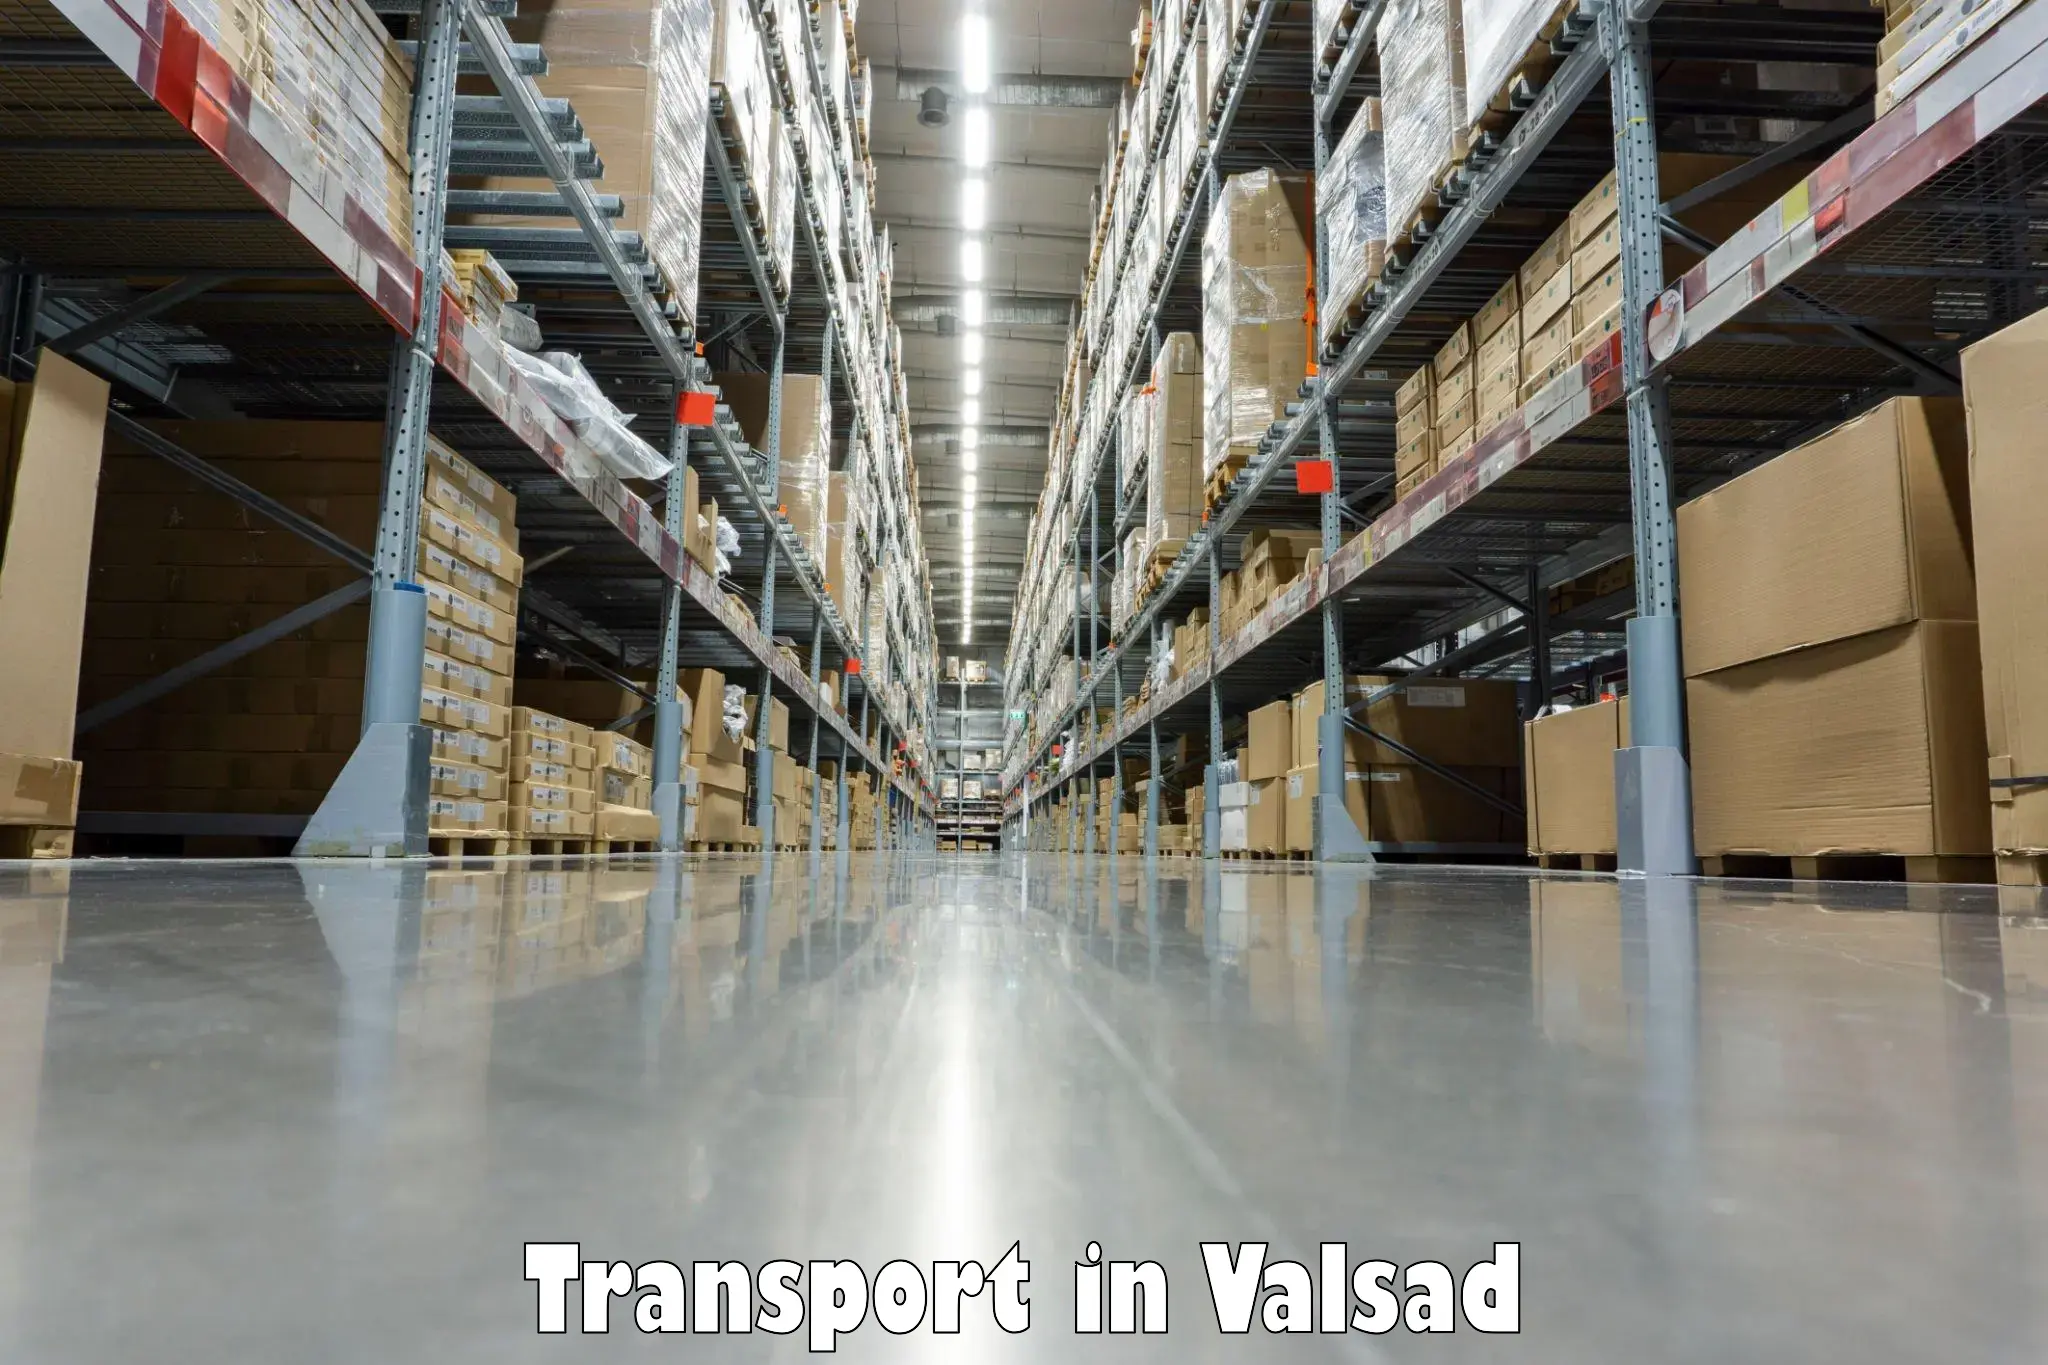 Cargo transportation services in Valsad